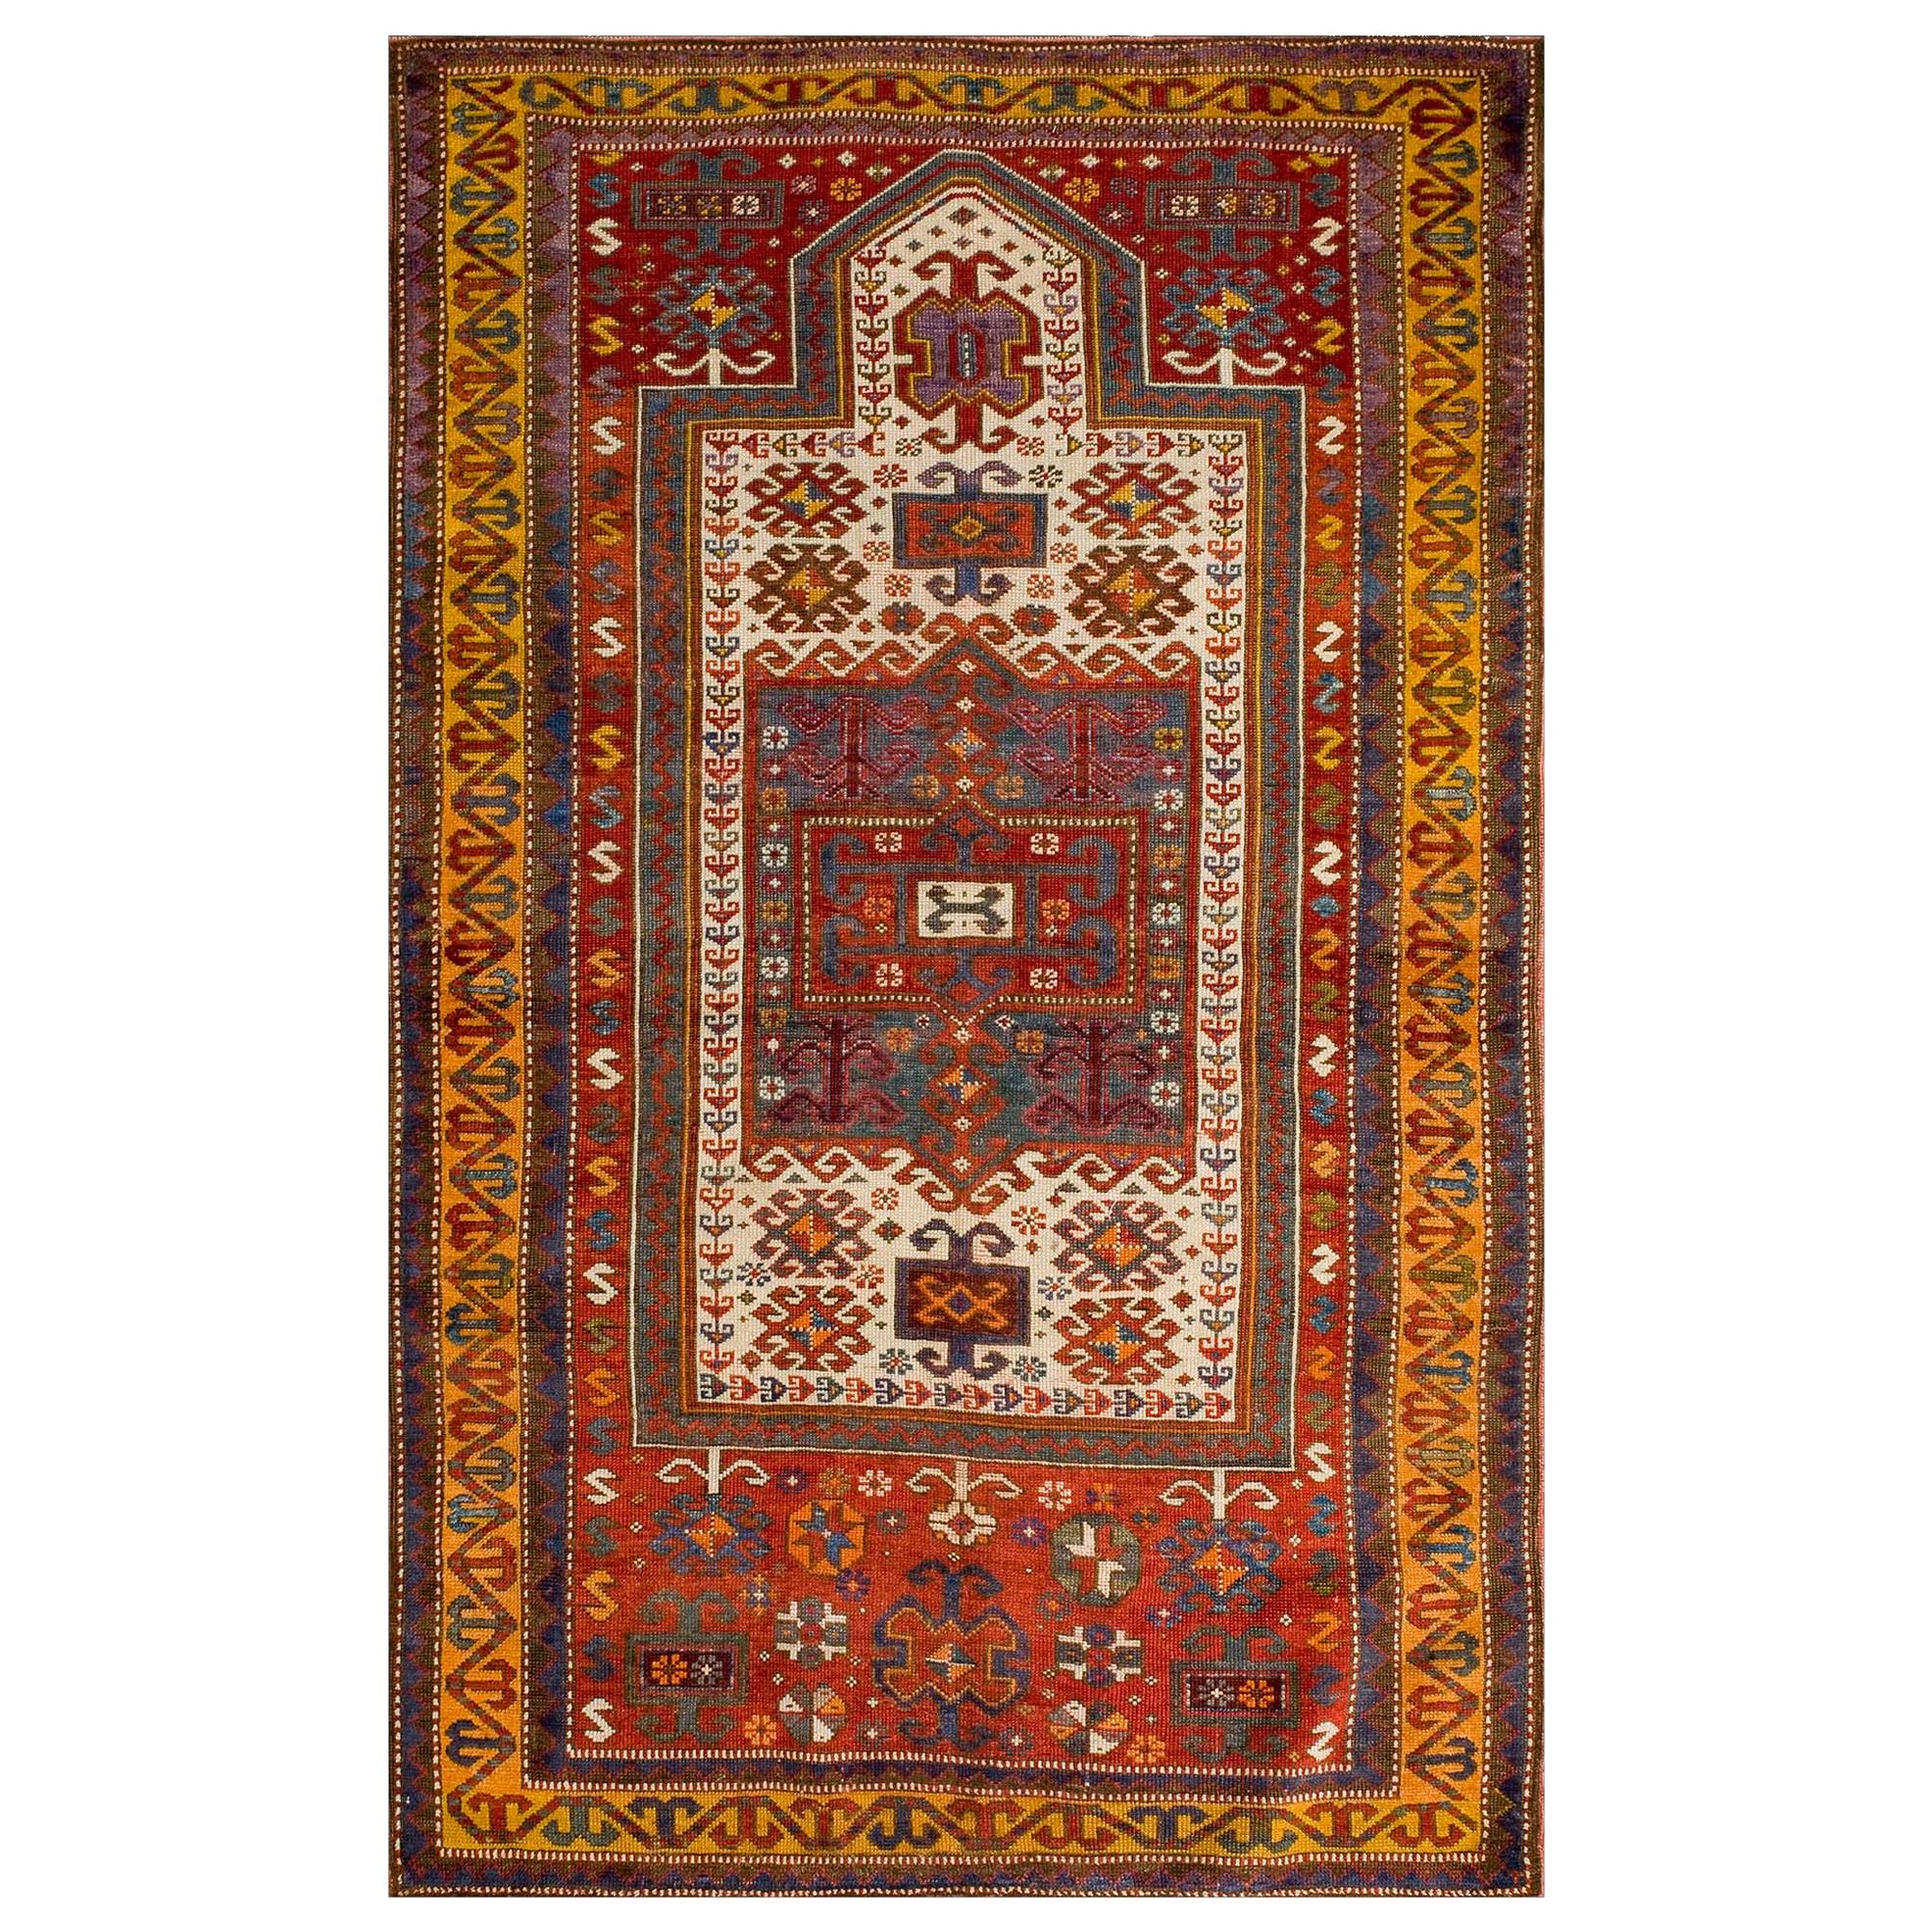 Kaukasischer Fachralo-Gebetsteppich aus dem späten 19. Jahrhundert ( 3'9" x 6' - 115 x 183 )